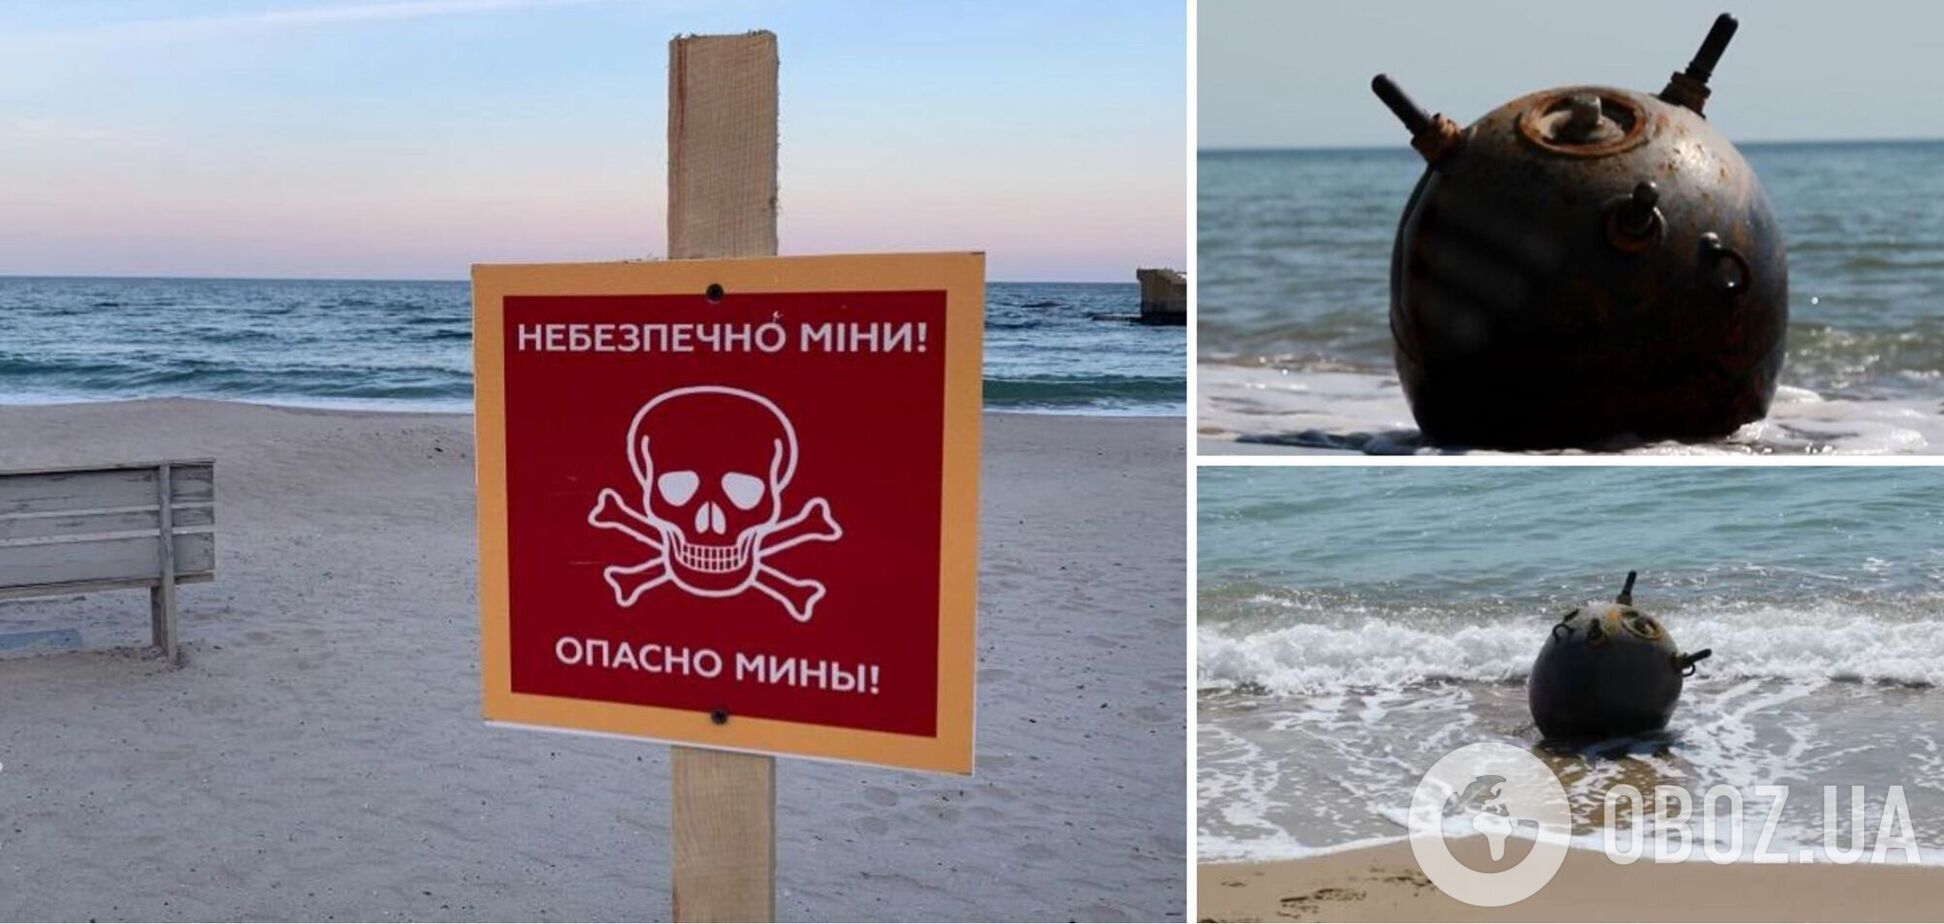 На побережье в Одесской области вынесло дрейфующую противокорабельную мину, ее обезвредили. Фото